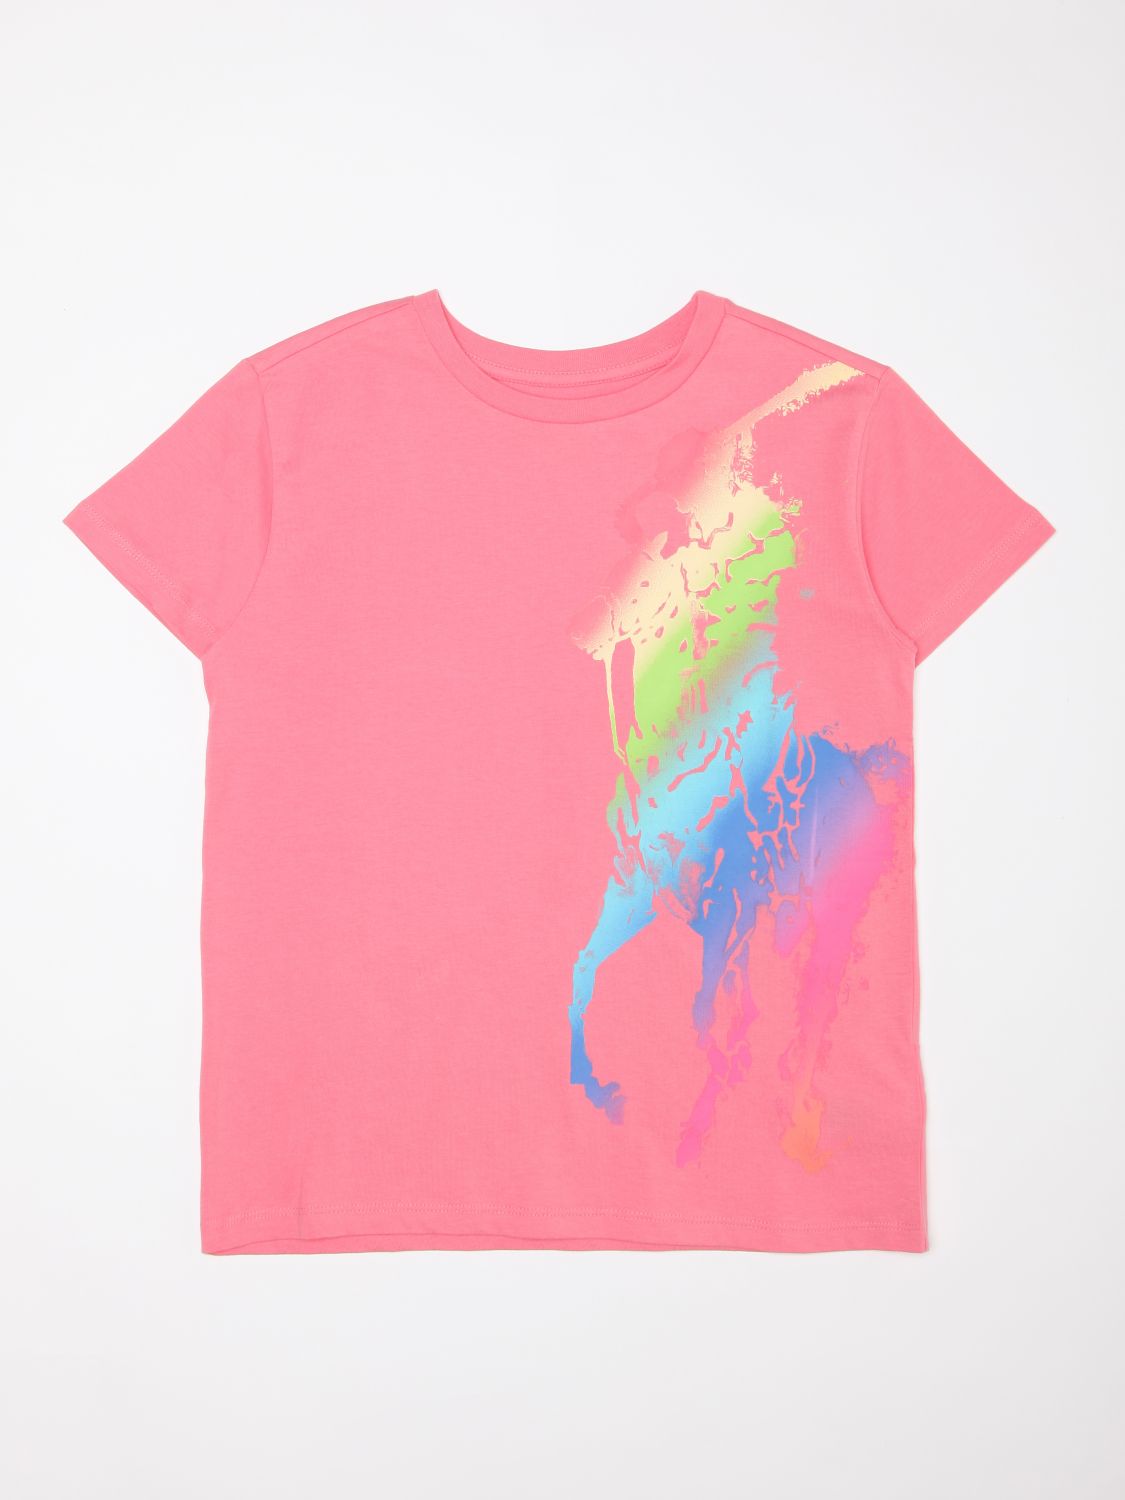 POLO RALPH LAUREN: Camisetas para niña, Rosa | Camisetas Polo Ralph Lauren 313841390 en en GIGLIO.COM